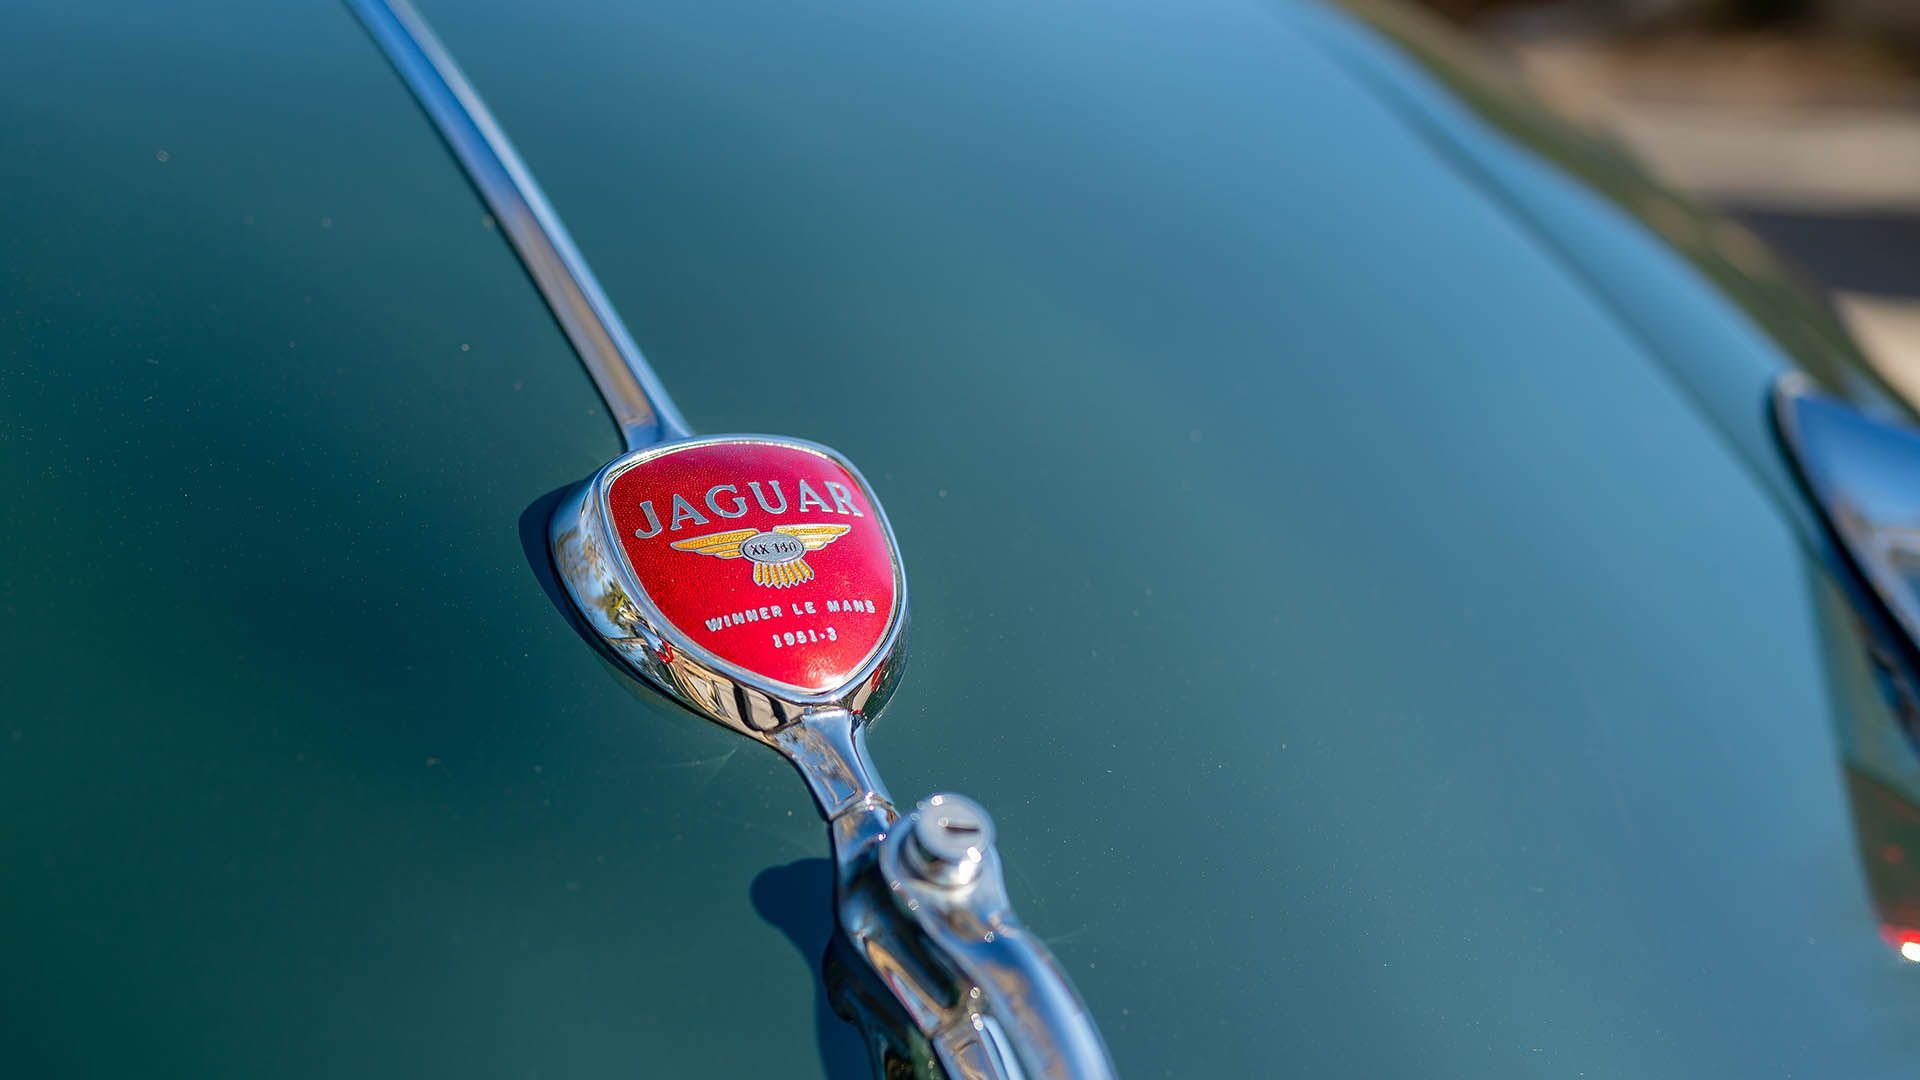 For Sale 1956 Jaguar XK140 MC Drop Head Coupe